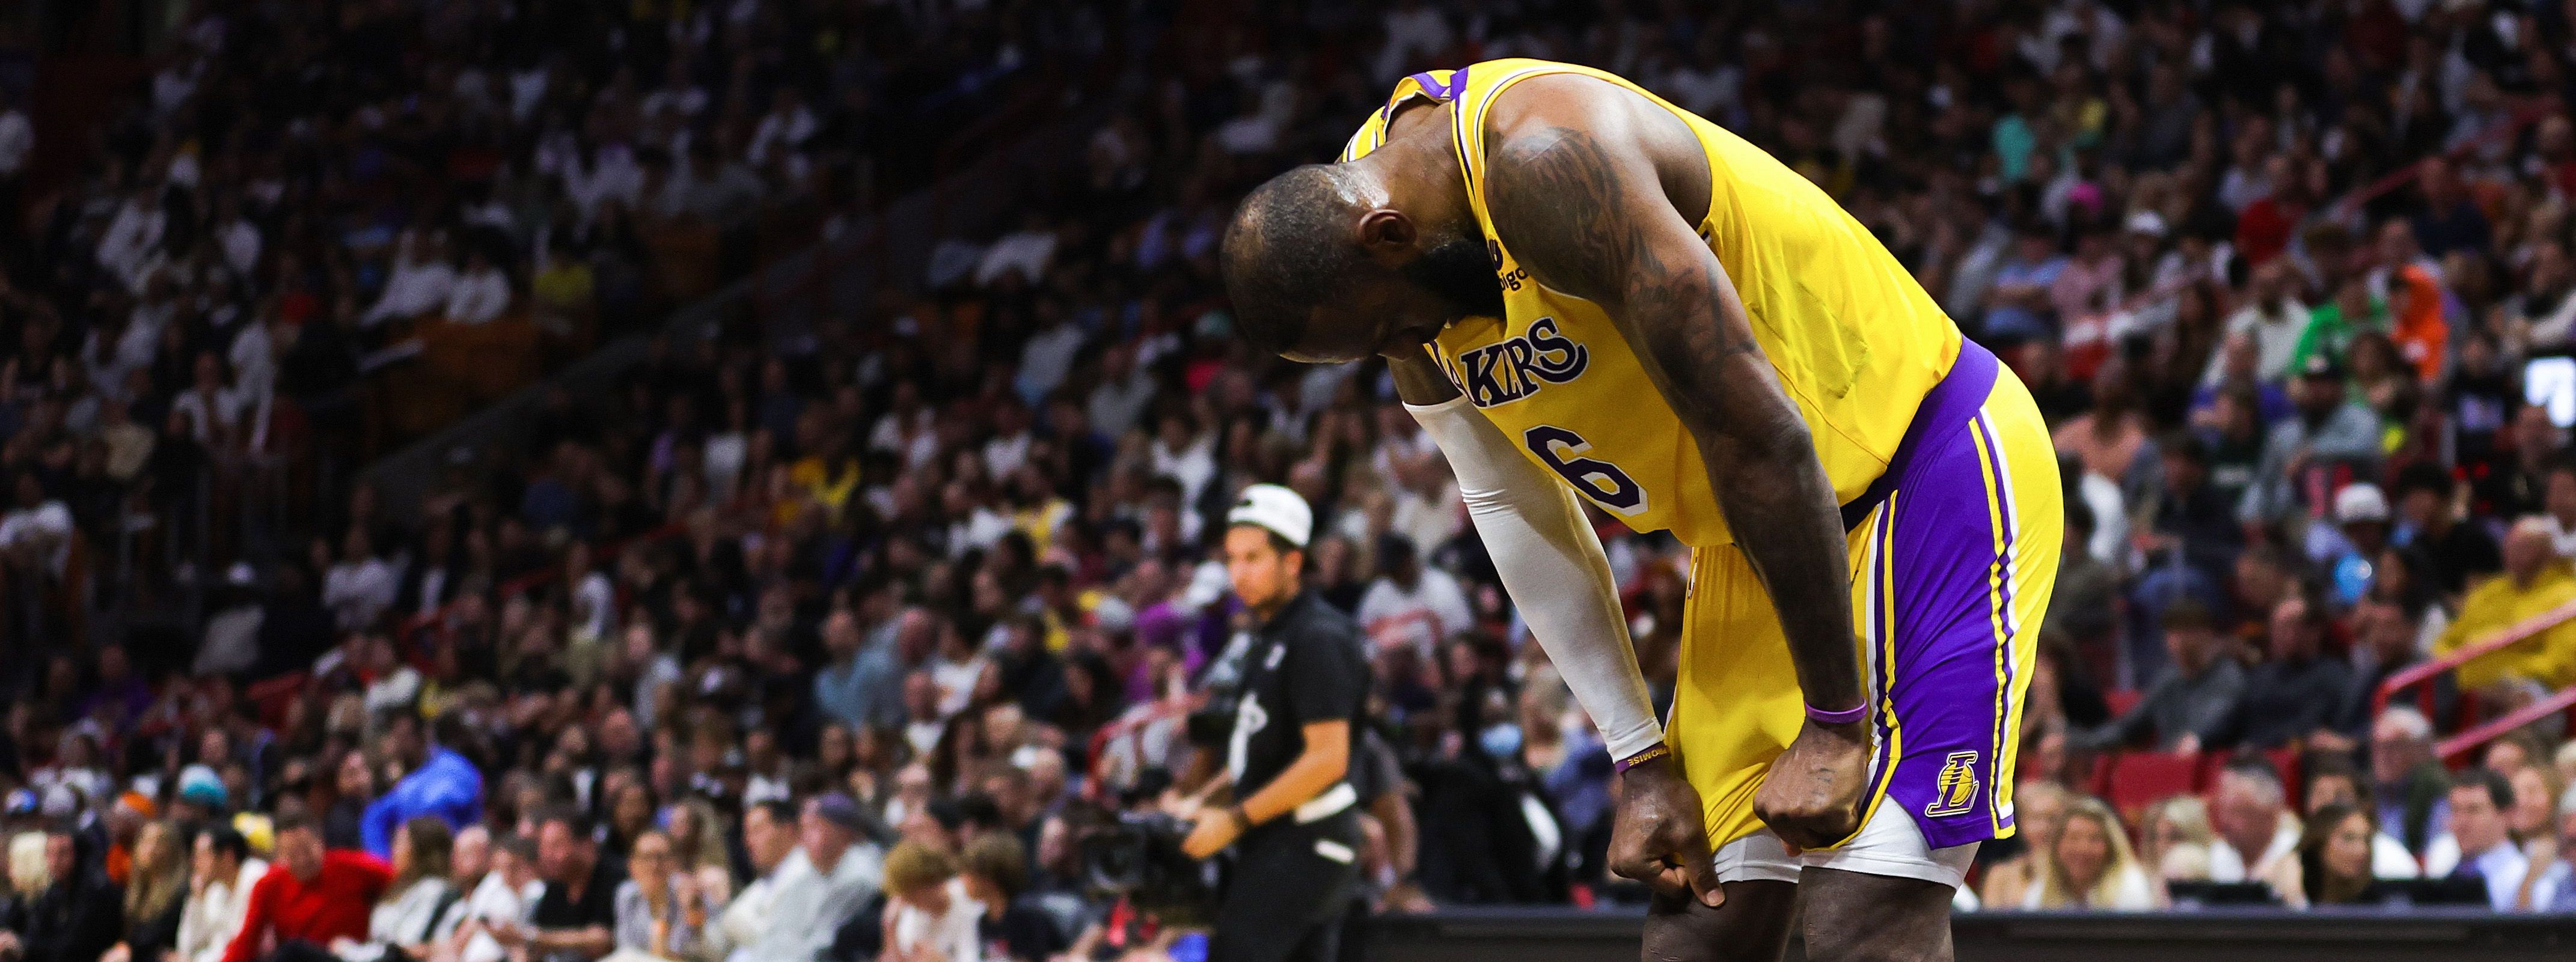 Muak Lakers Kalah Lagi, LeBron James: Saya Tidak Mau Mengakhiri Karier Saya di Level Ini